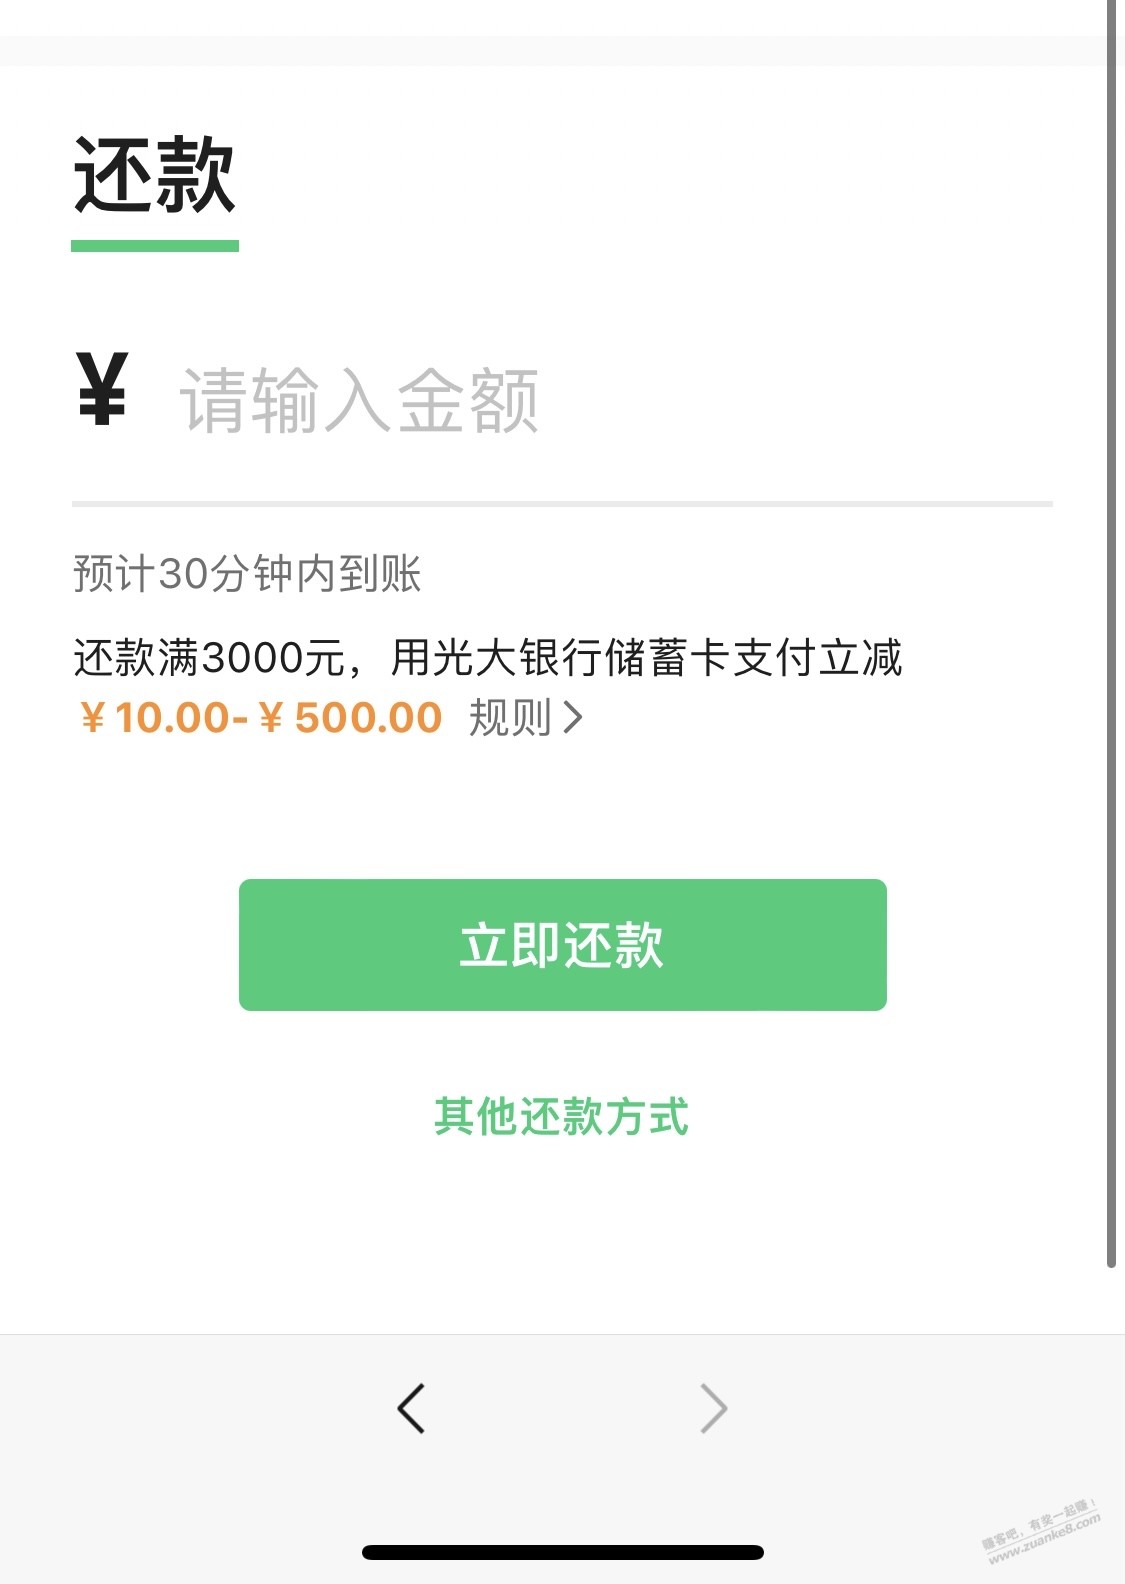 V.x光大储蓄还款大毛-惠小助(52huixz.com)